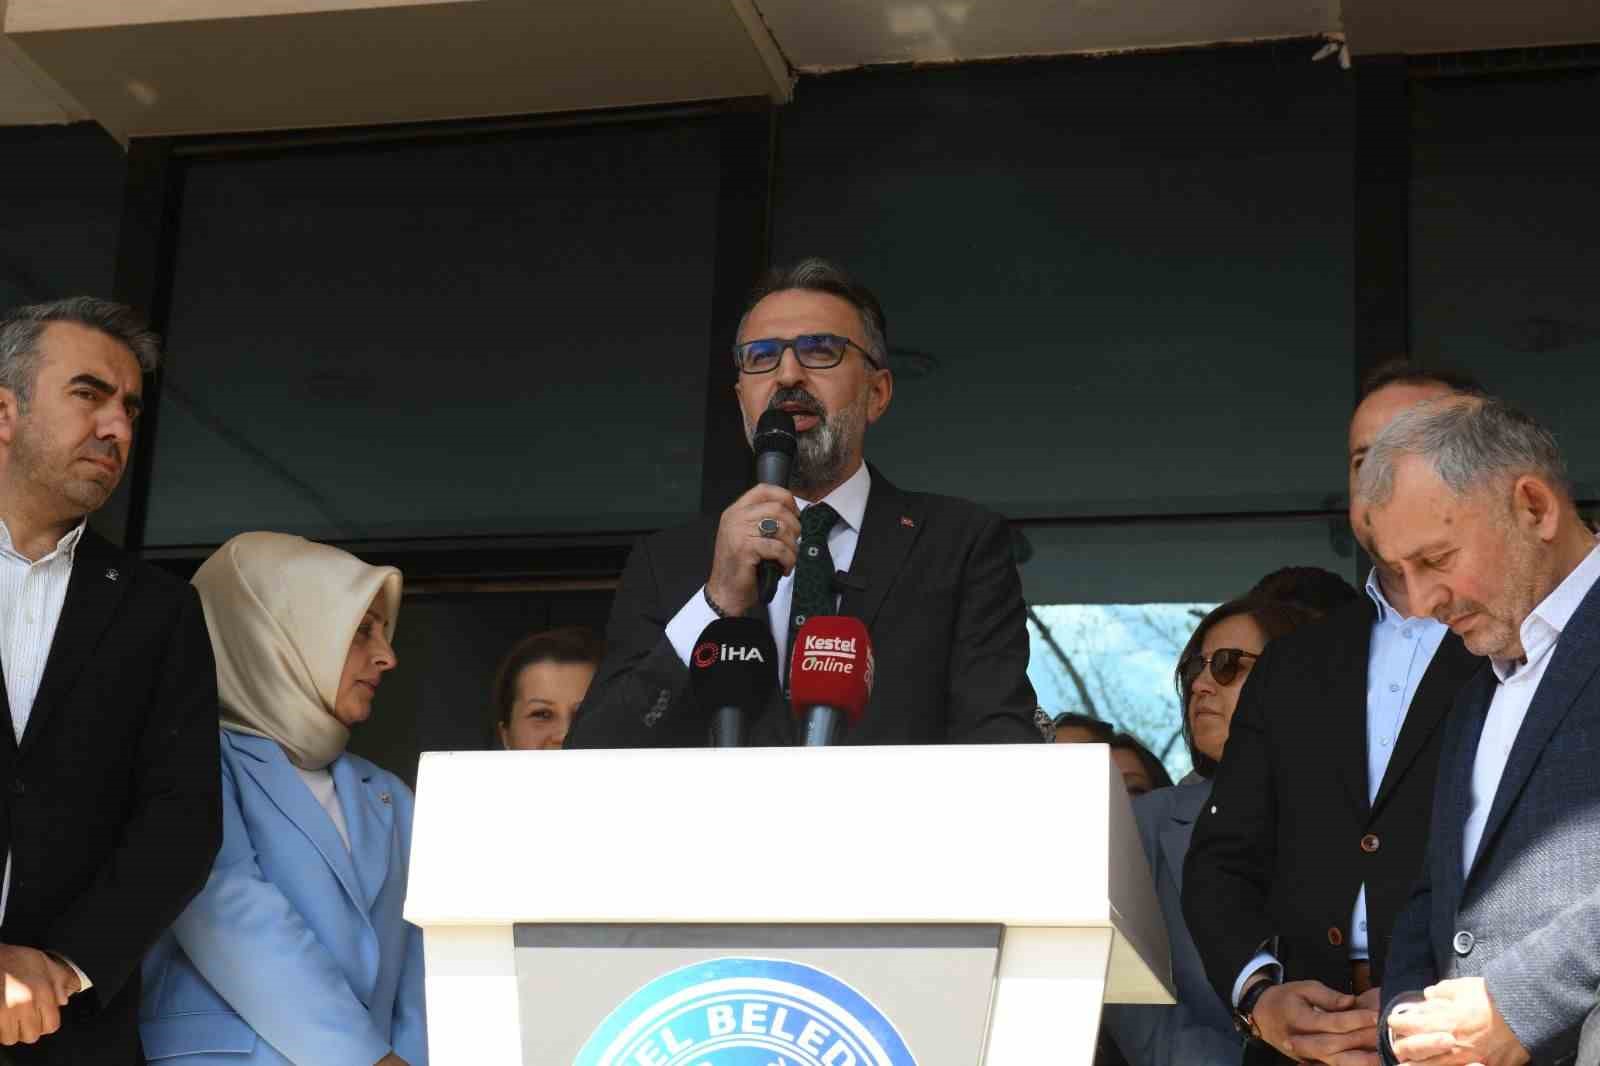 Kestel Belediye Başkanı Ferhat Erol göreve başladı